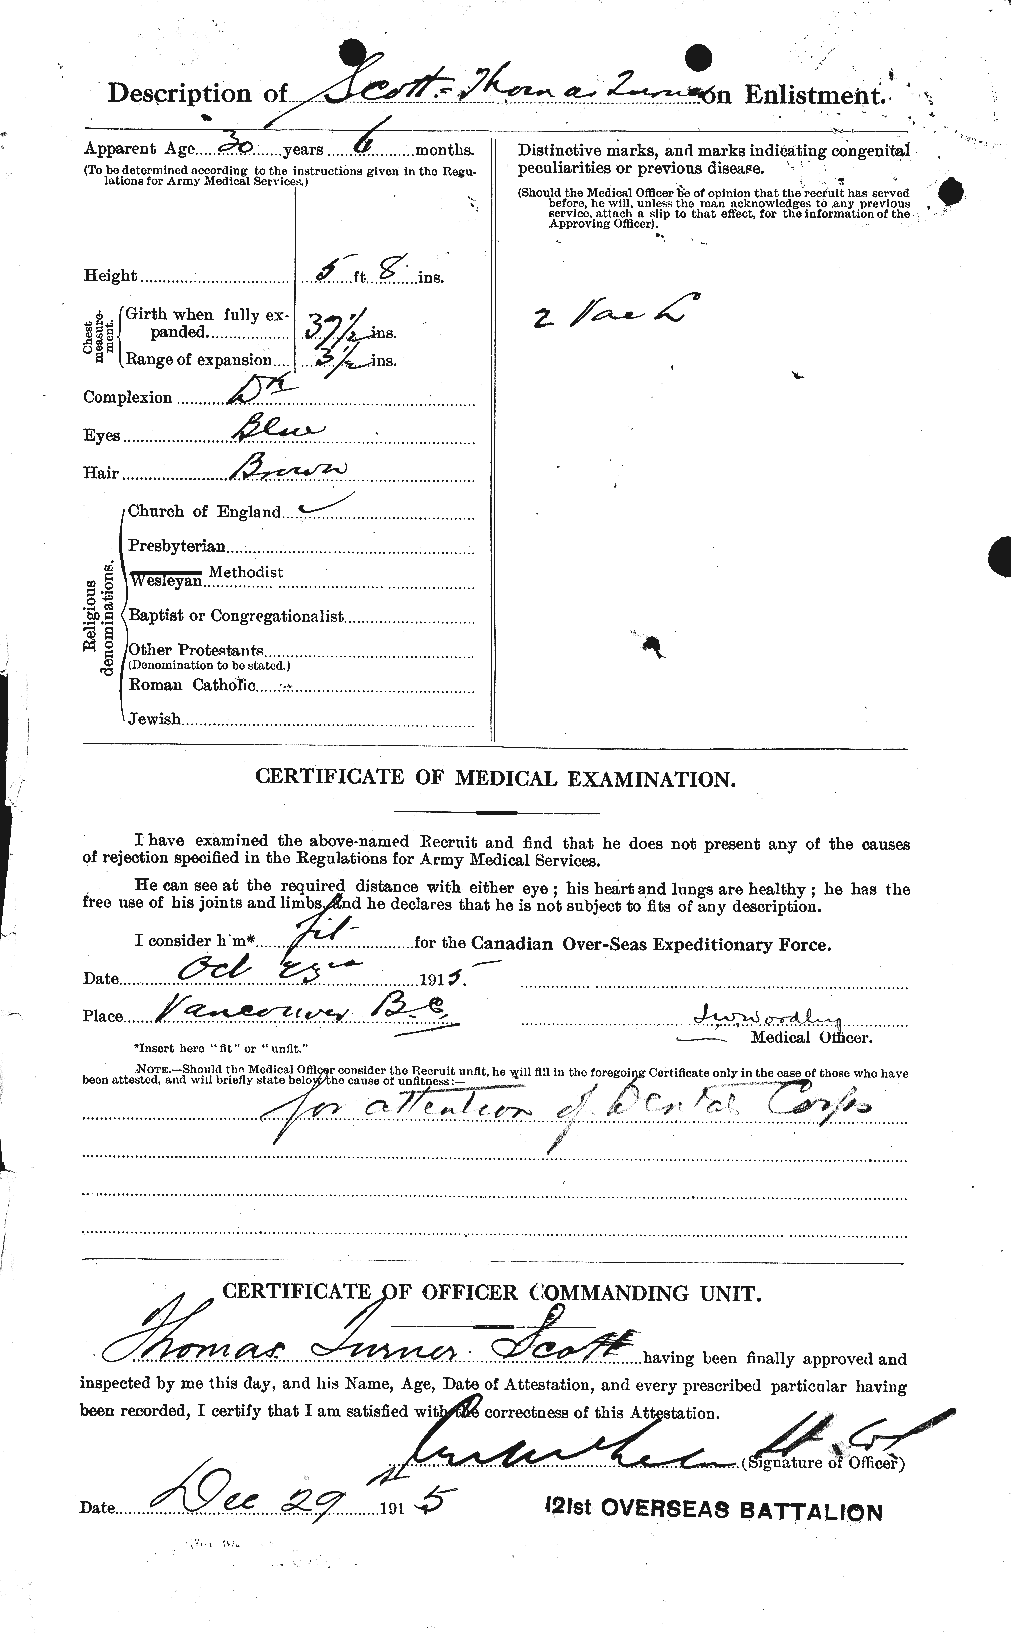 Dossiers du Personnel de la Première Guerre mondiale - CEC 088219b